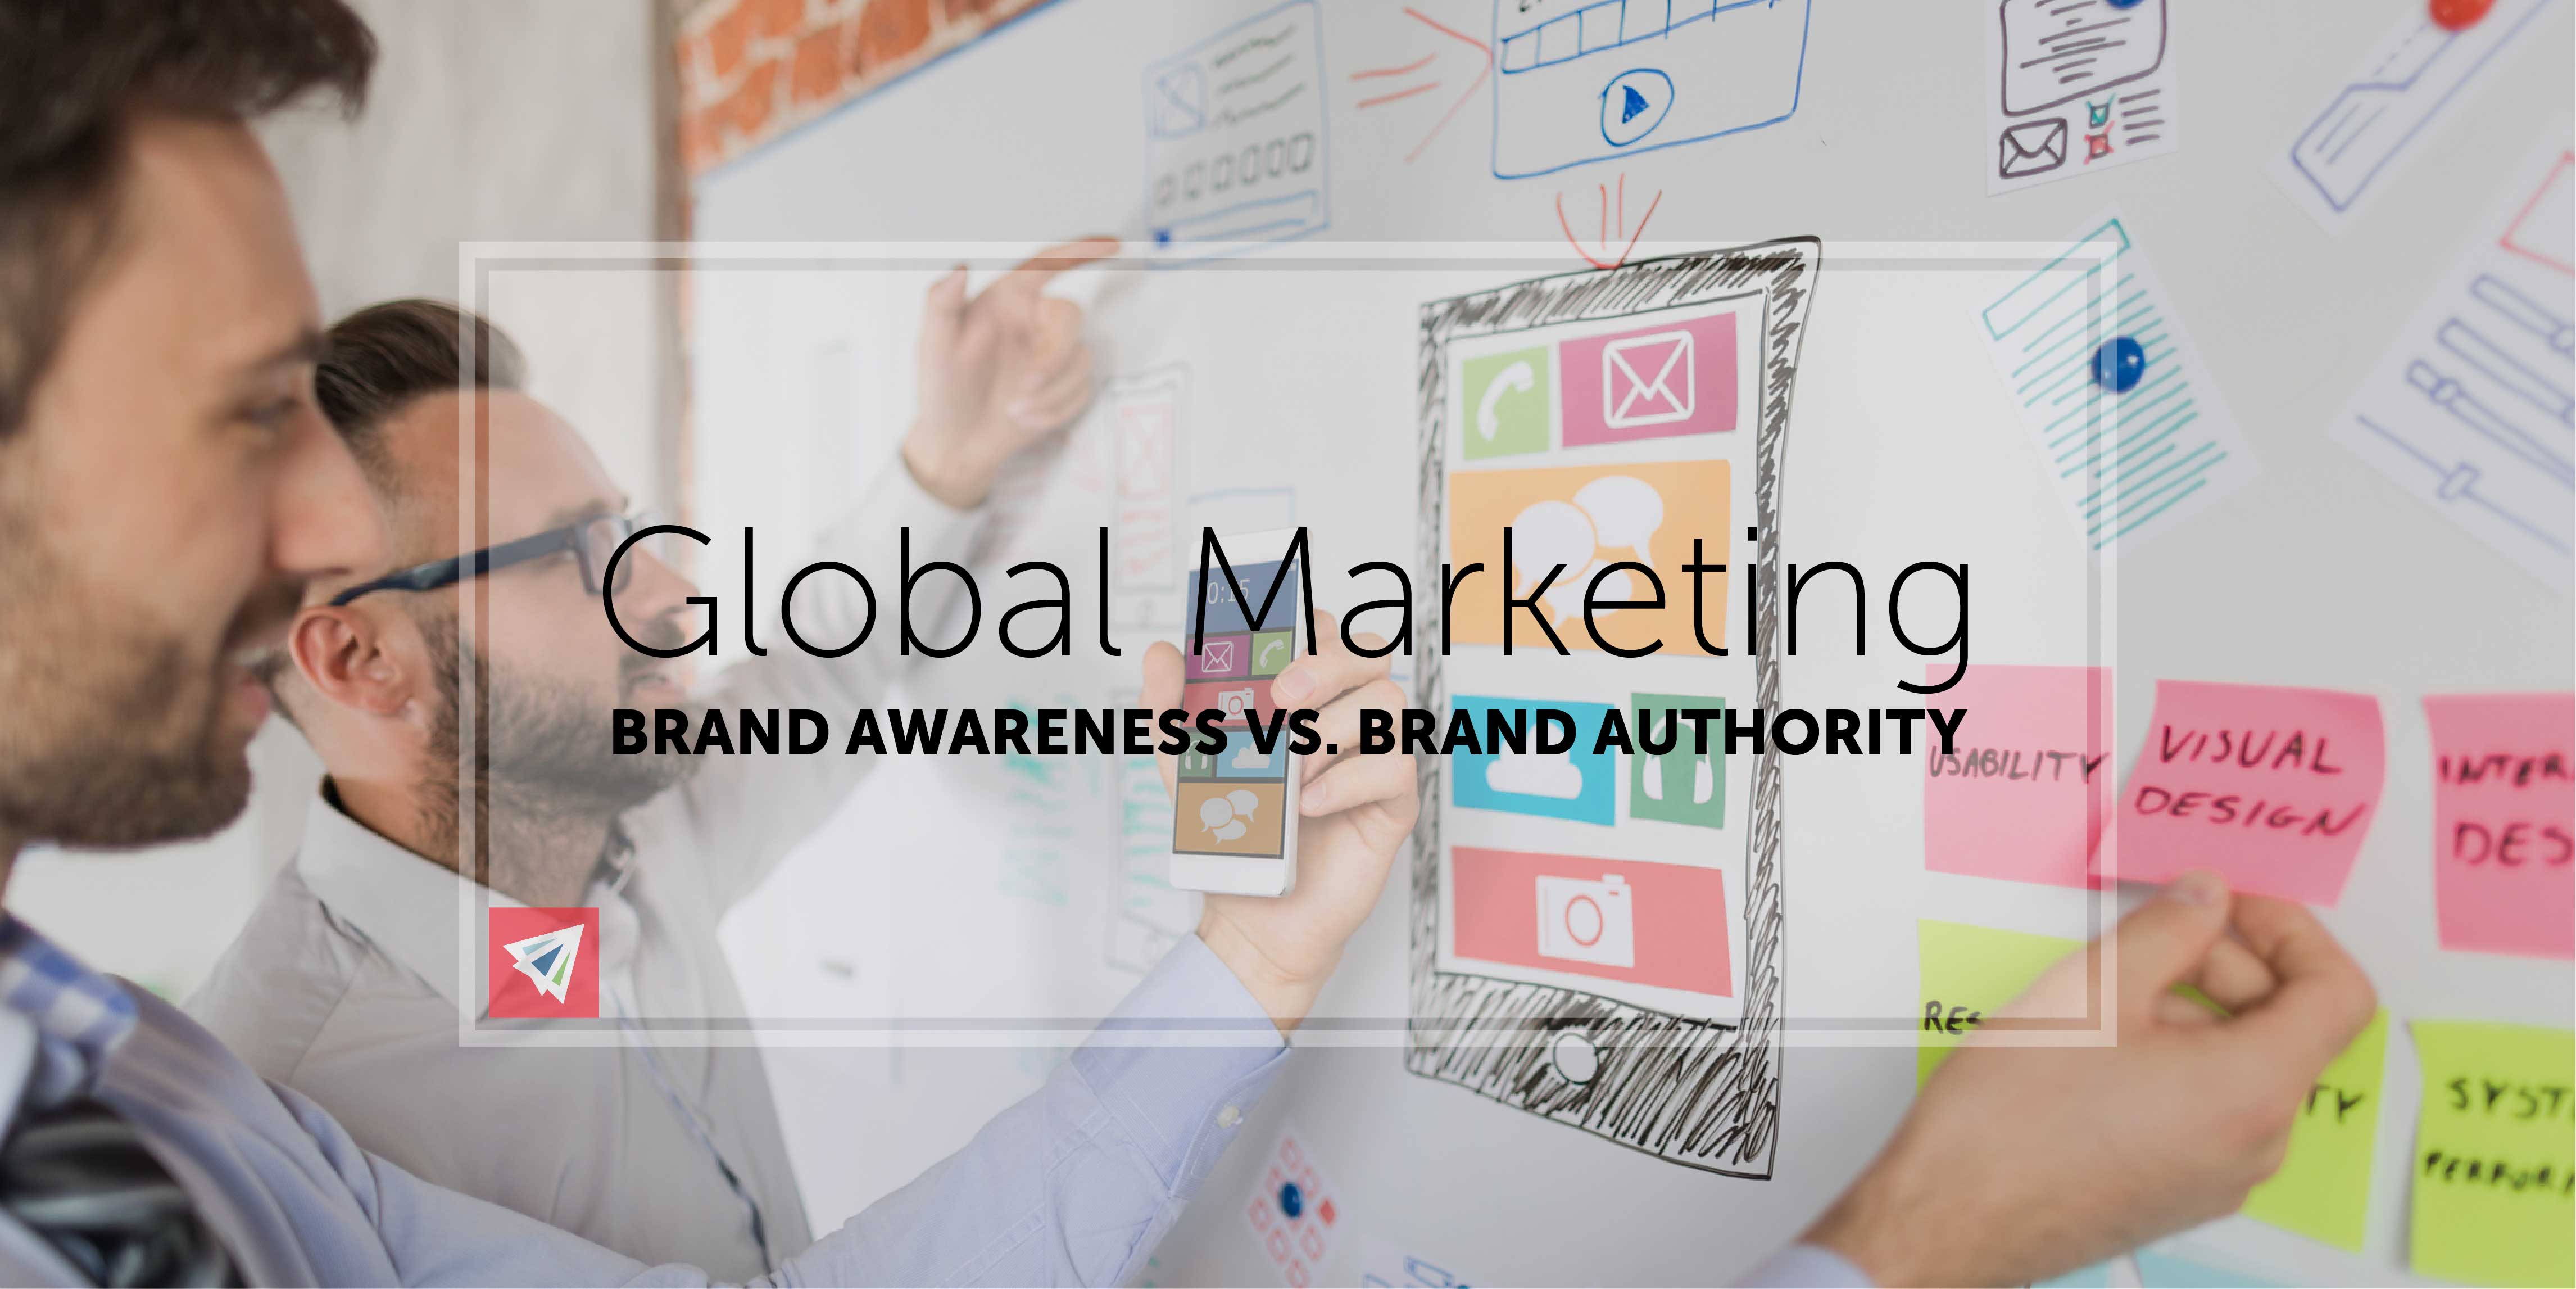 Global Marketing - Brand Awareness vs. Brand Authority